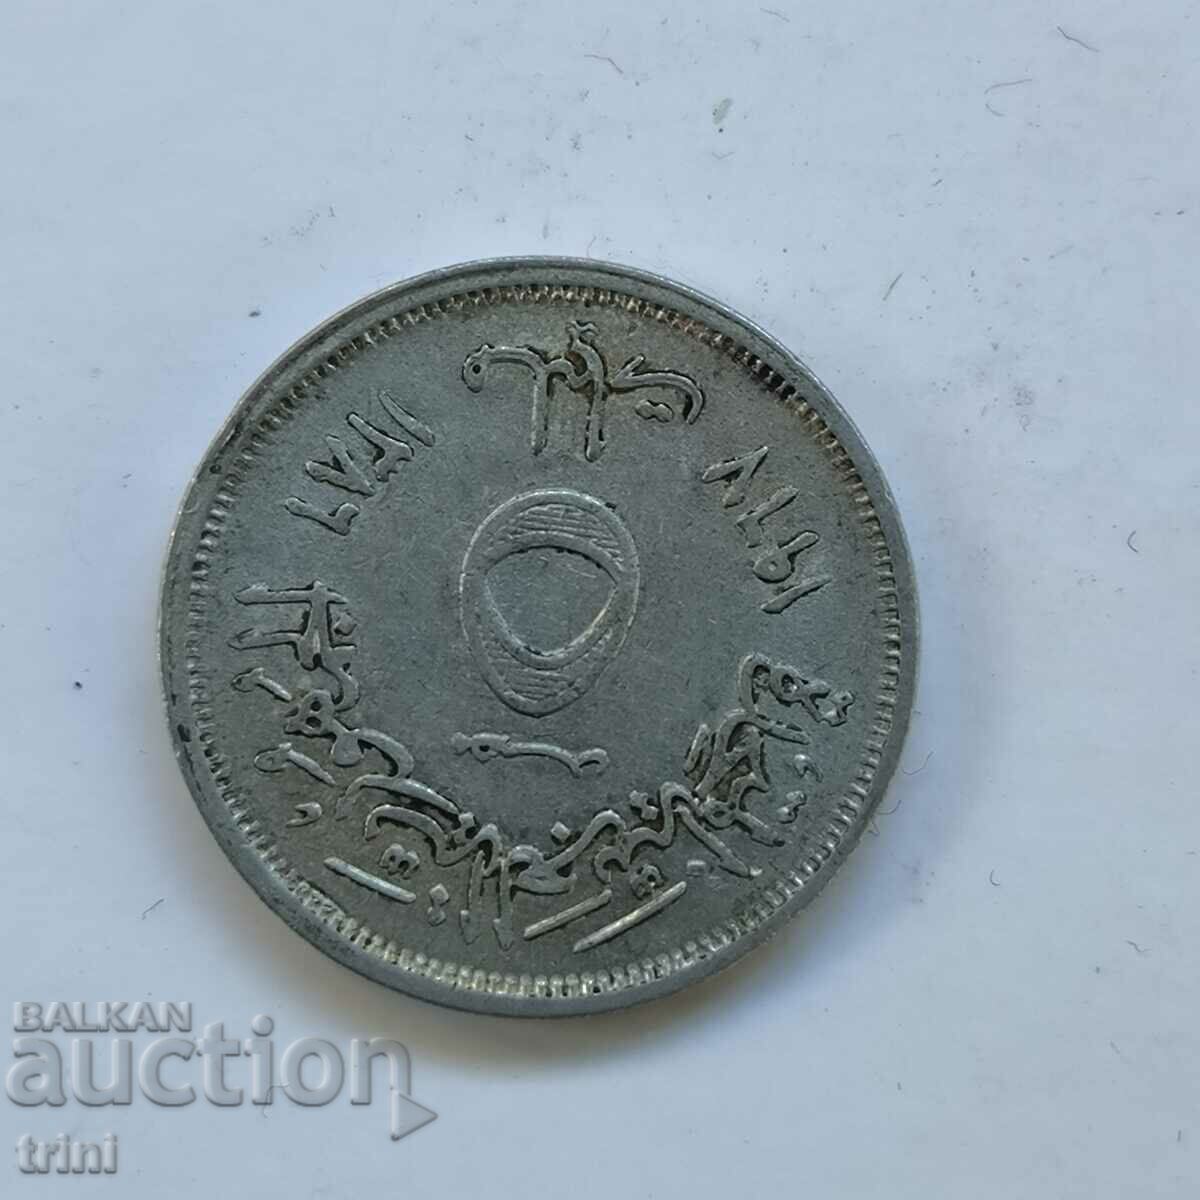 Αίγυπτος 5 χιλιοστά 1967, αλουμίνιο